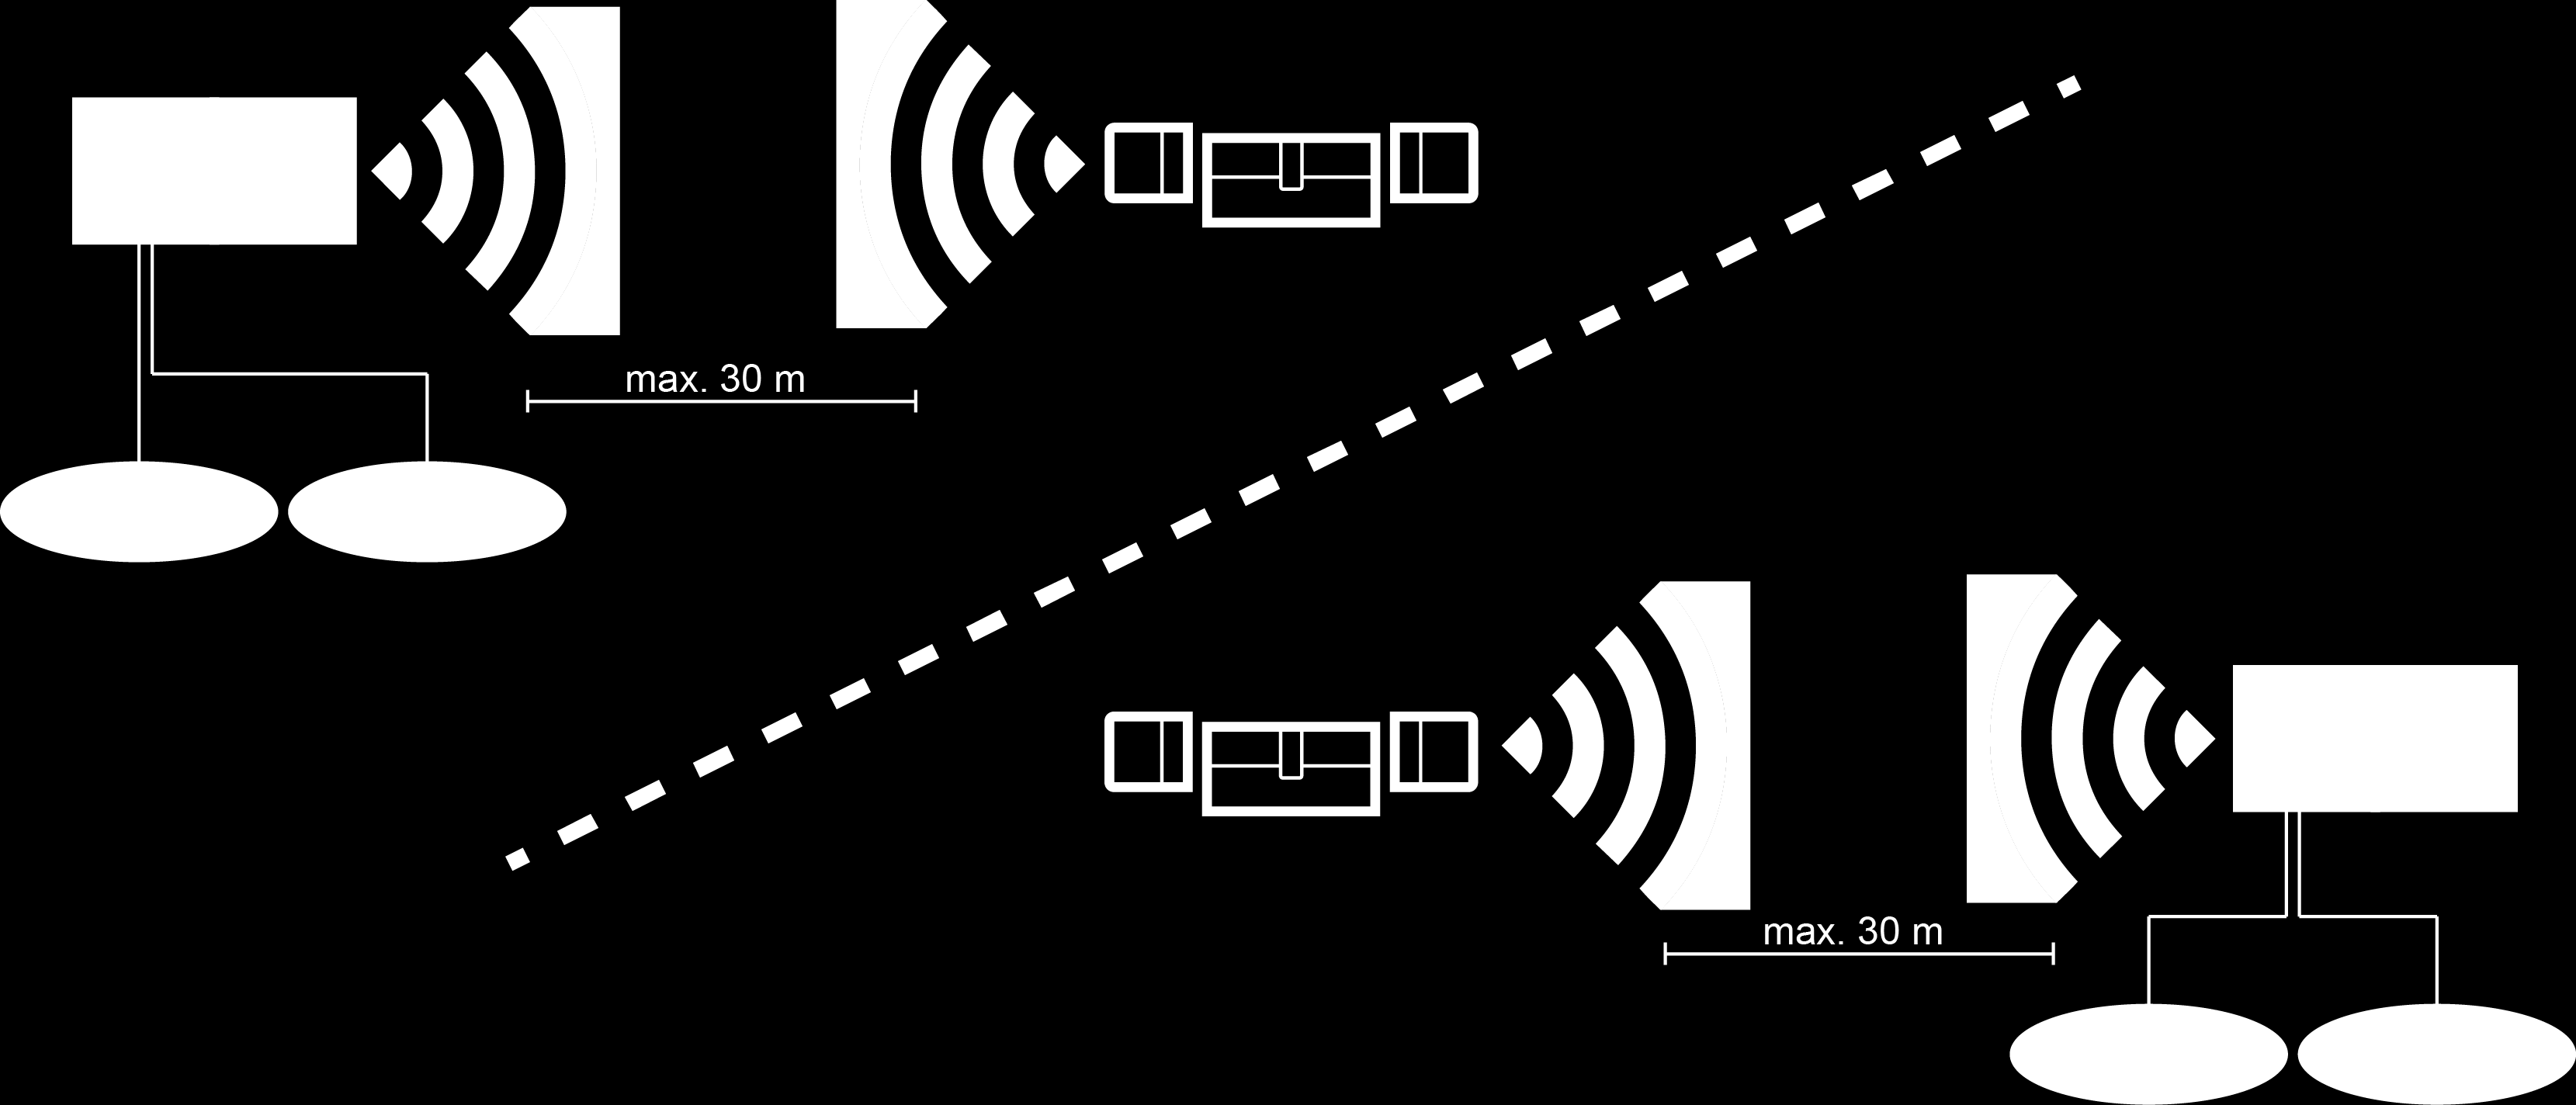 Welk slot door een bepaald Accesspoint wordt aangestuurd, wordt automatisch door MobileKey ONLINE bepaald aan de hand van de sterkte van het signaal.